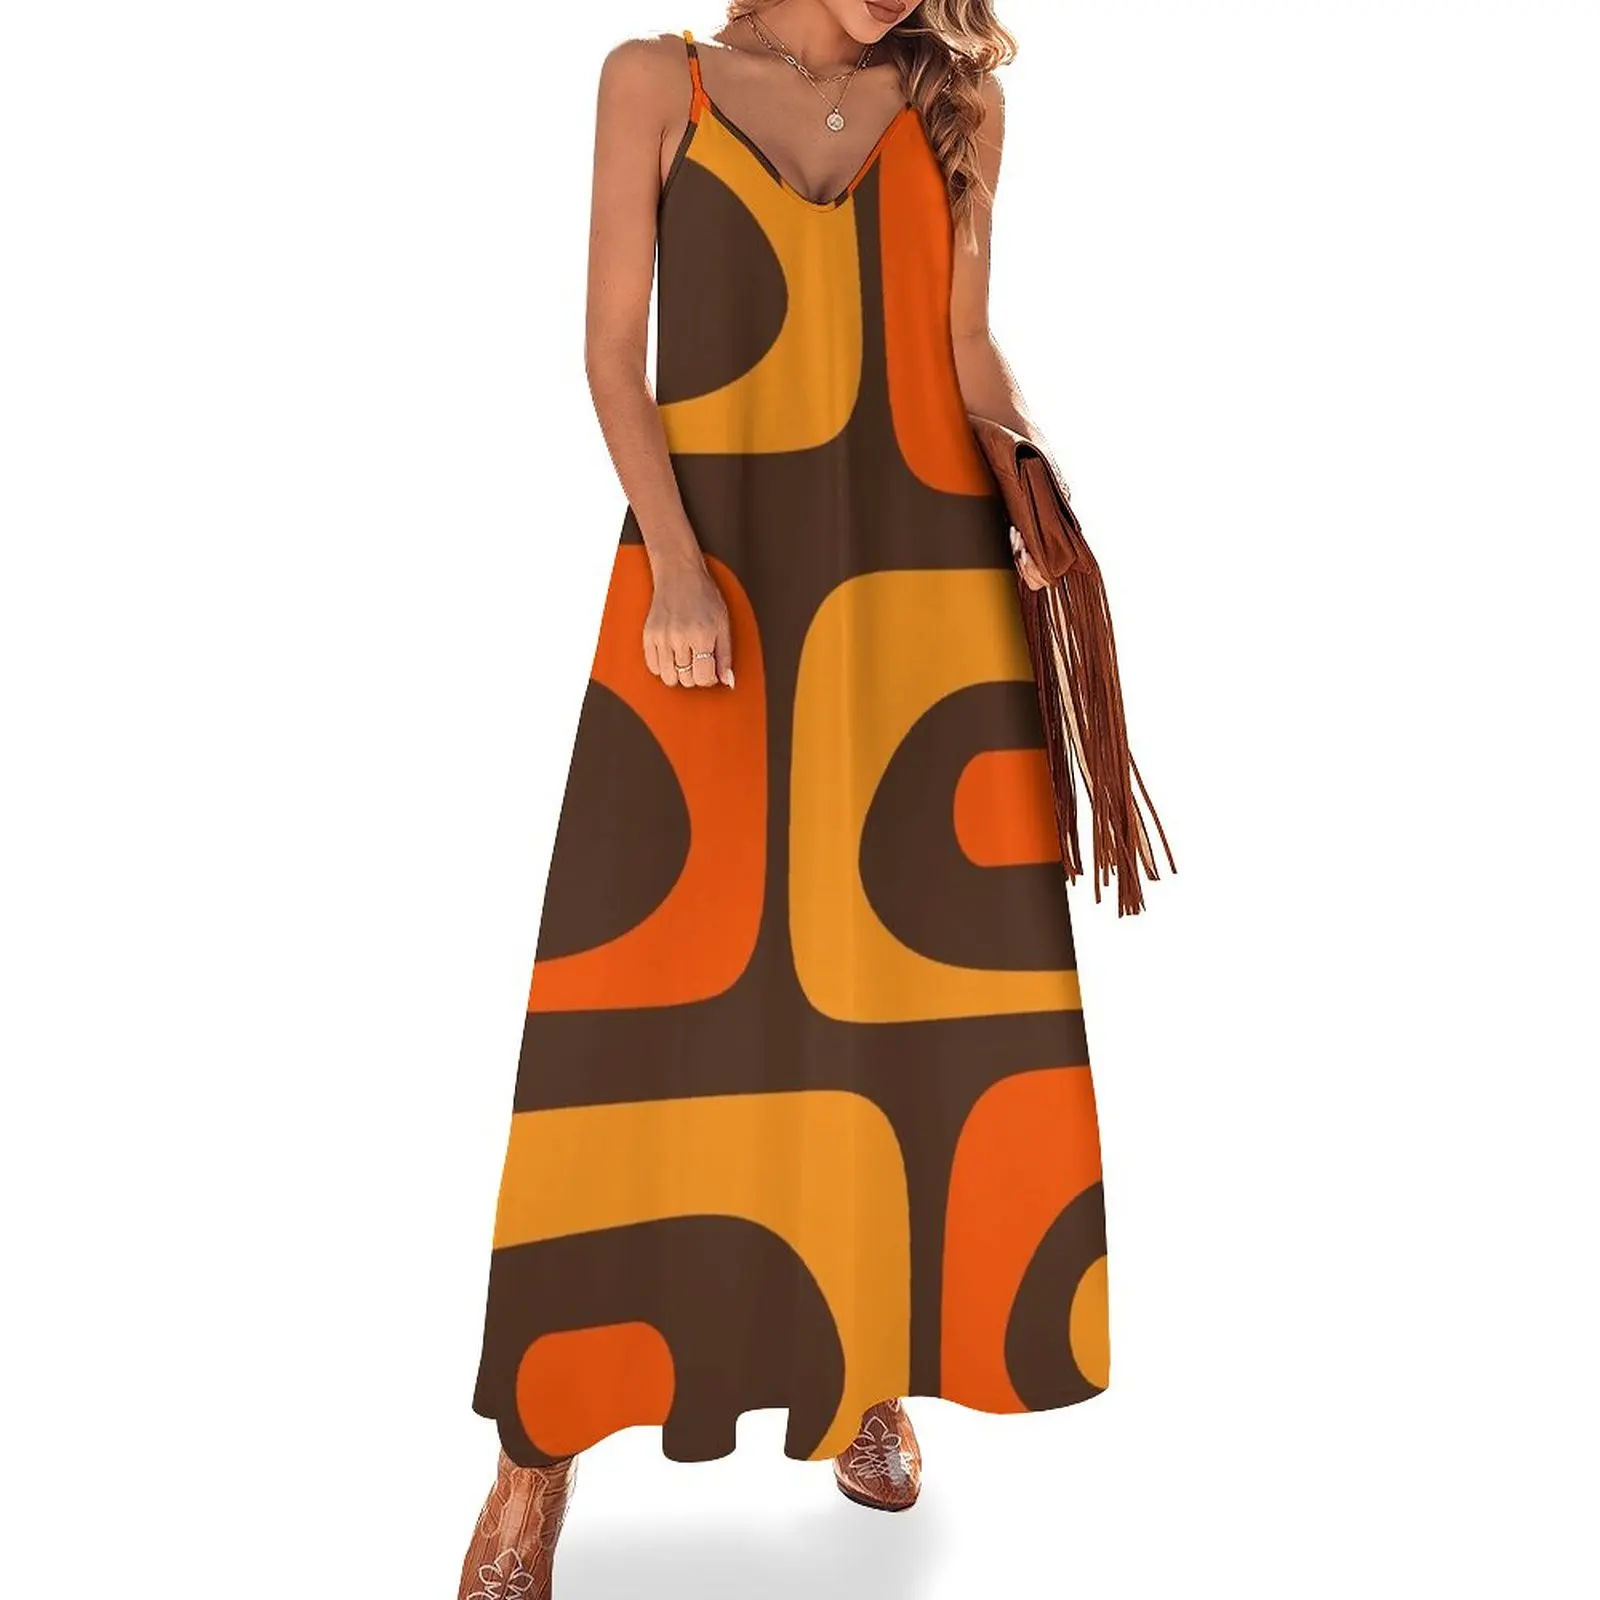 

Платье без рукавов среднего века в стиле ретро, минималистичное свободное летнее платье в стиле 1950-х, коричневое и оранжевое, с абстрактным изображением Пике